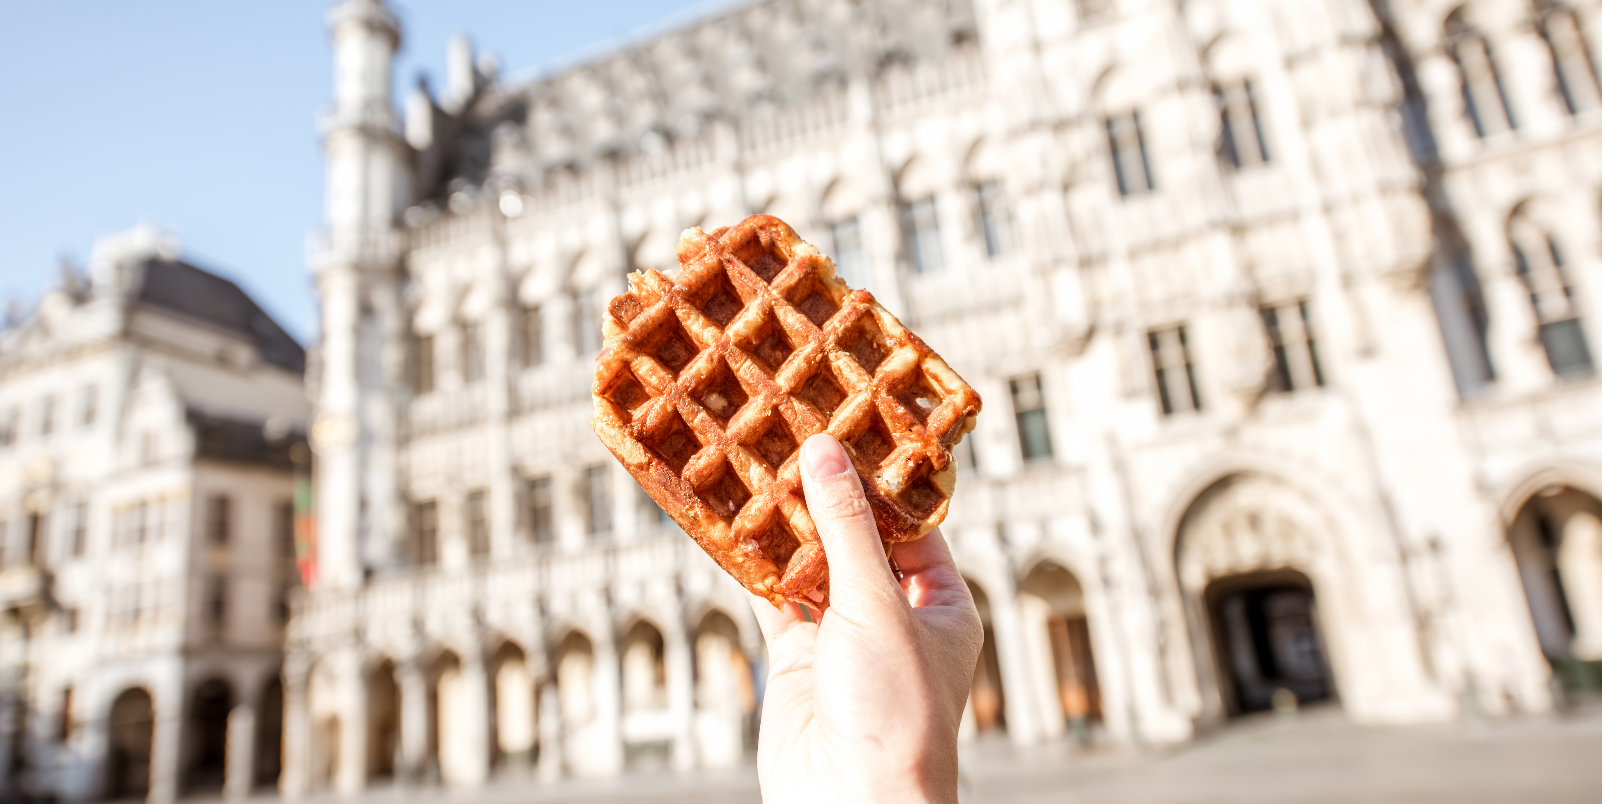 Traditional belgian waffle